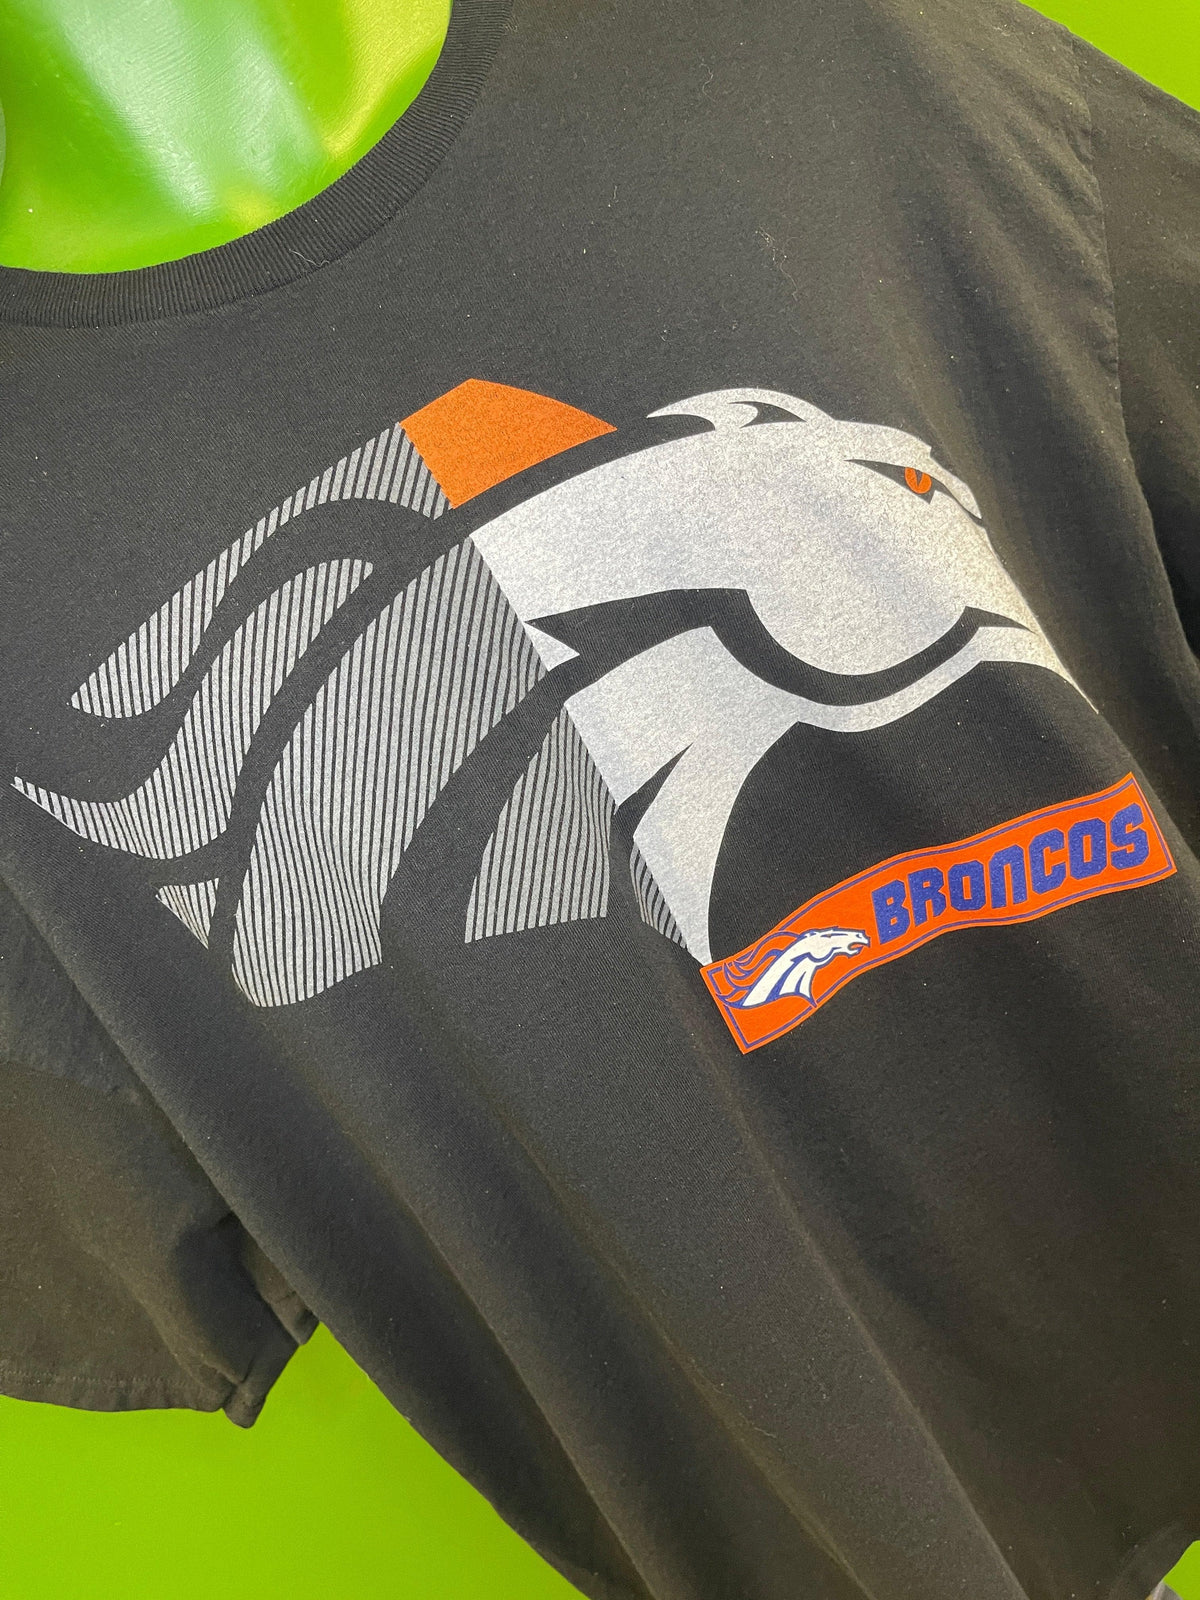 NFL Denver Broncos Black 100% Cotton Stylised Logo T-Shirt Men's 3X-Large